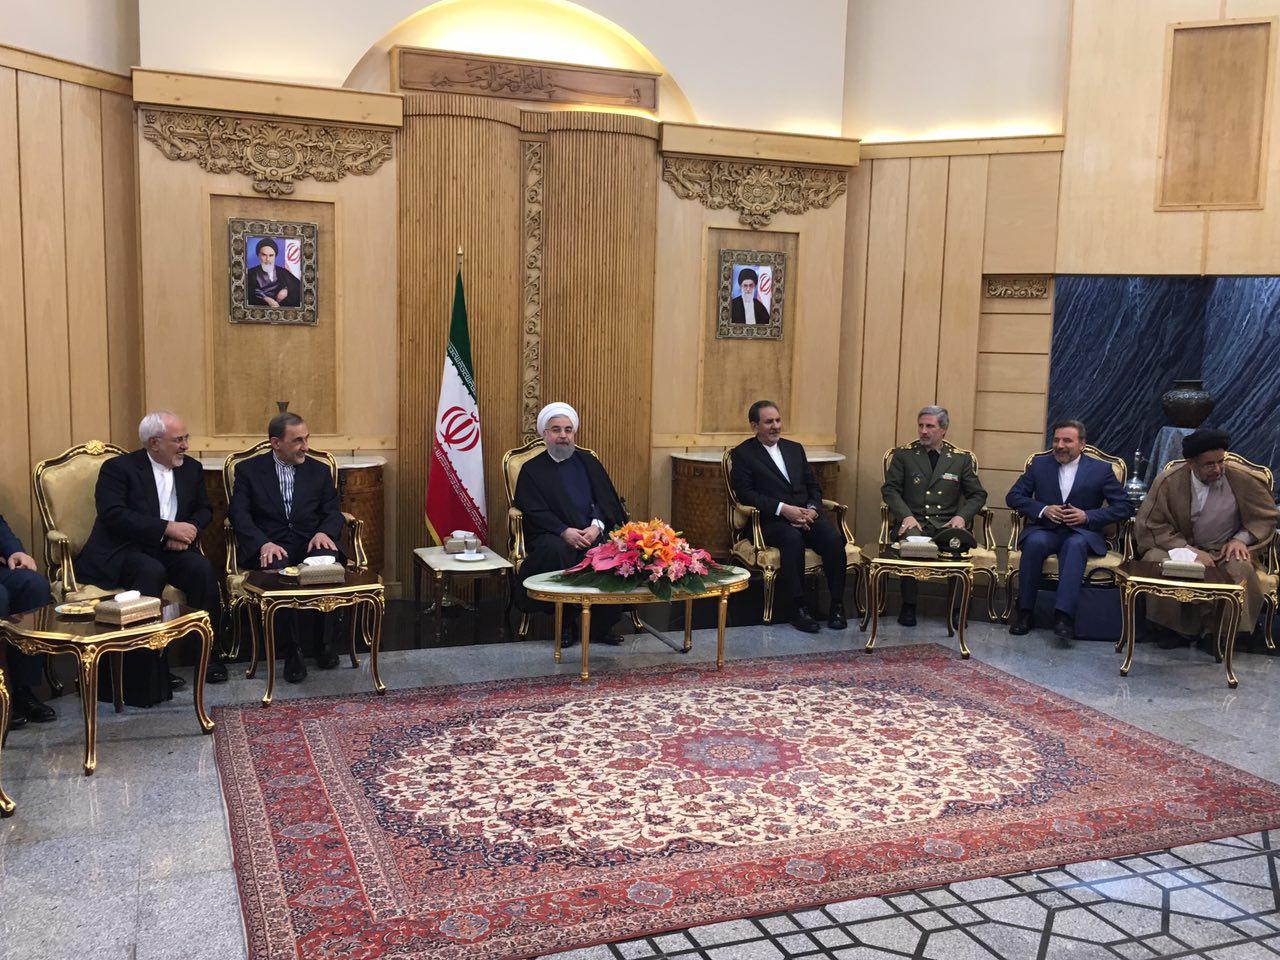 روحاني: اجتماع آستانة مهم لتقدم وقوة الدول الاسلامية وحل مشاكل العالم الاسلامي